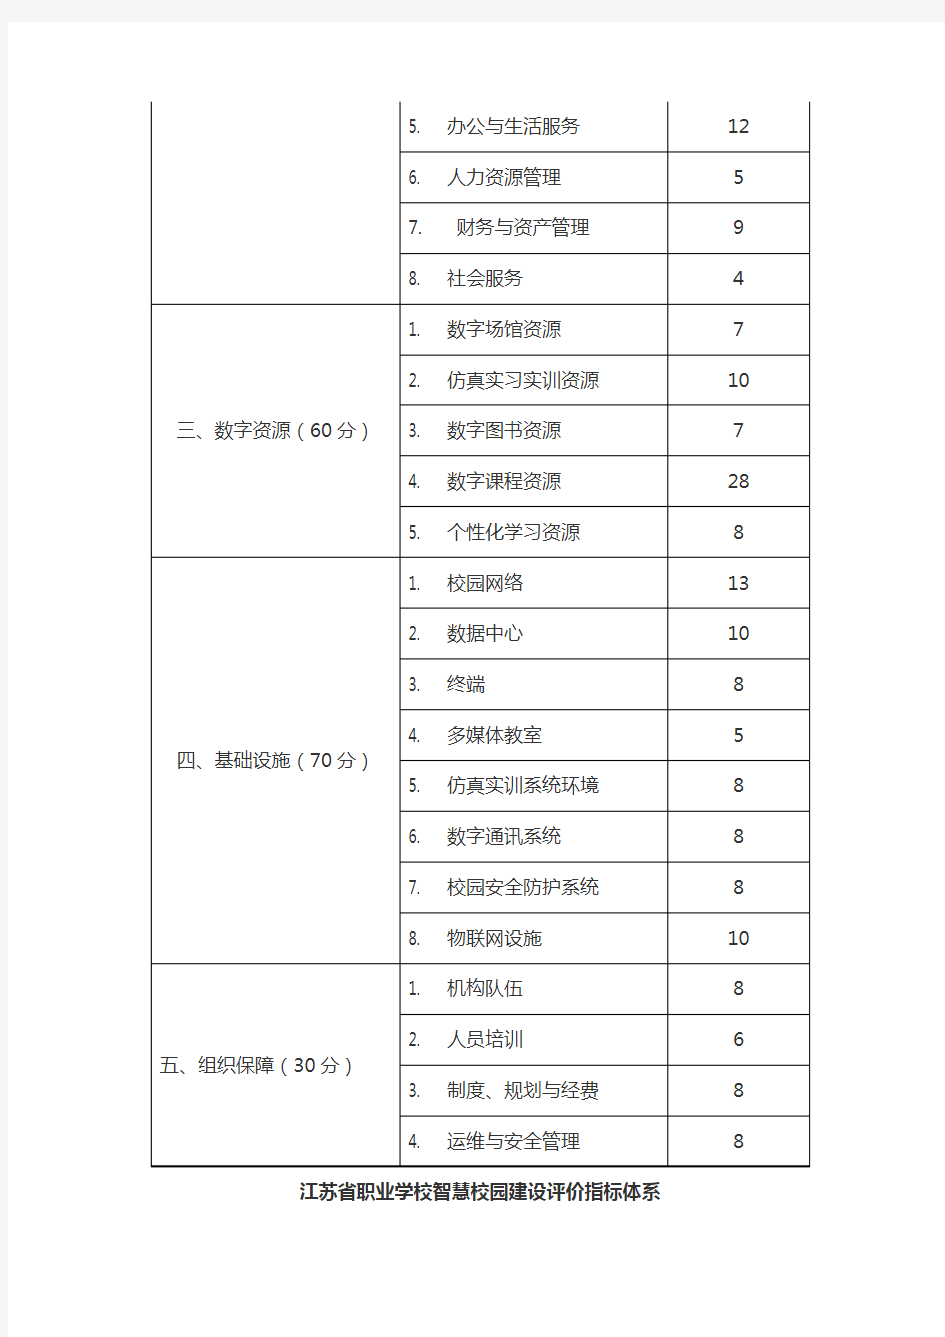 江苏省职业学校智慧校园-建设评价指标体系